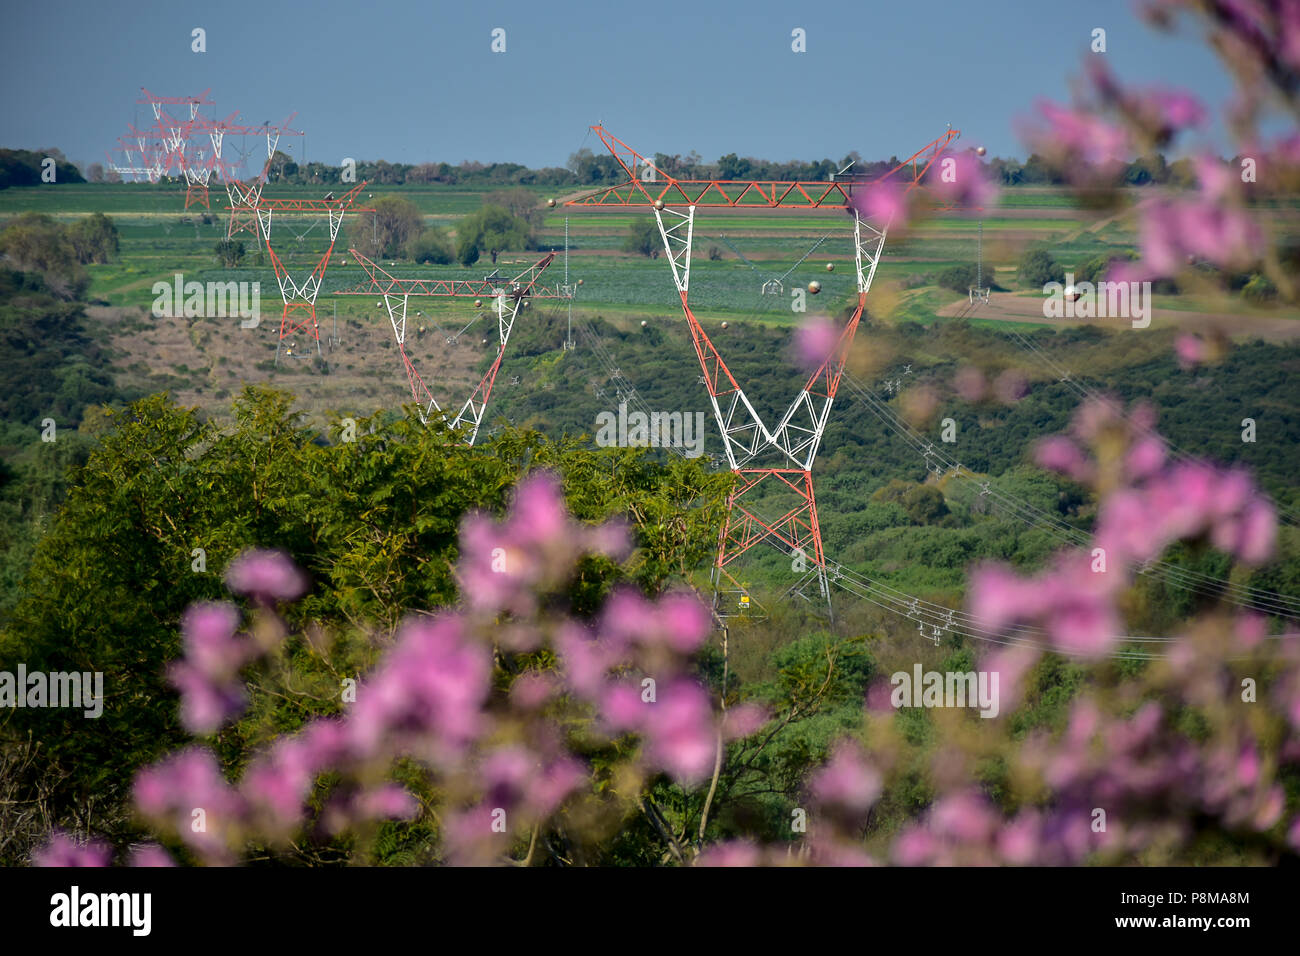 Paysage de pylônes électriques dans la campagne vu derrière un arbre plein de fleurs Banque D'Images